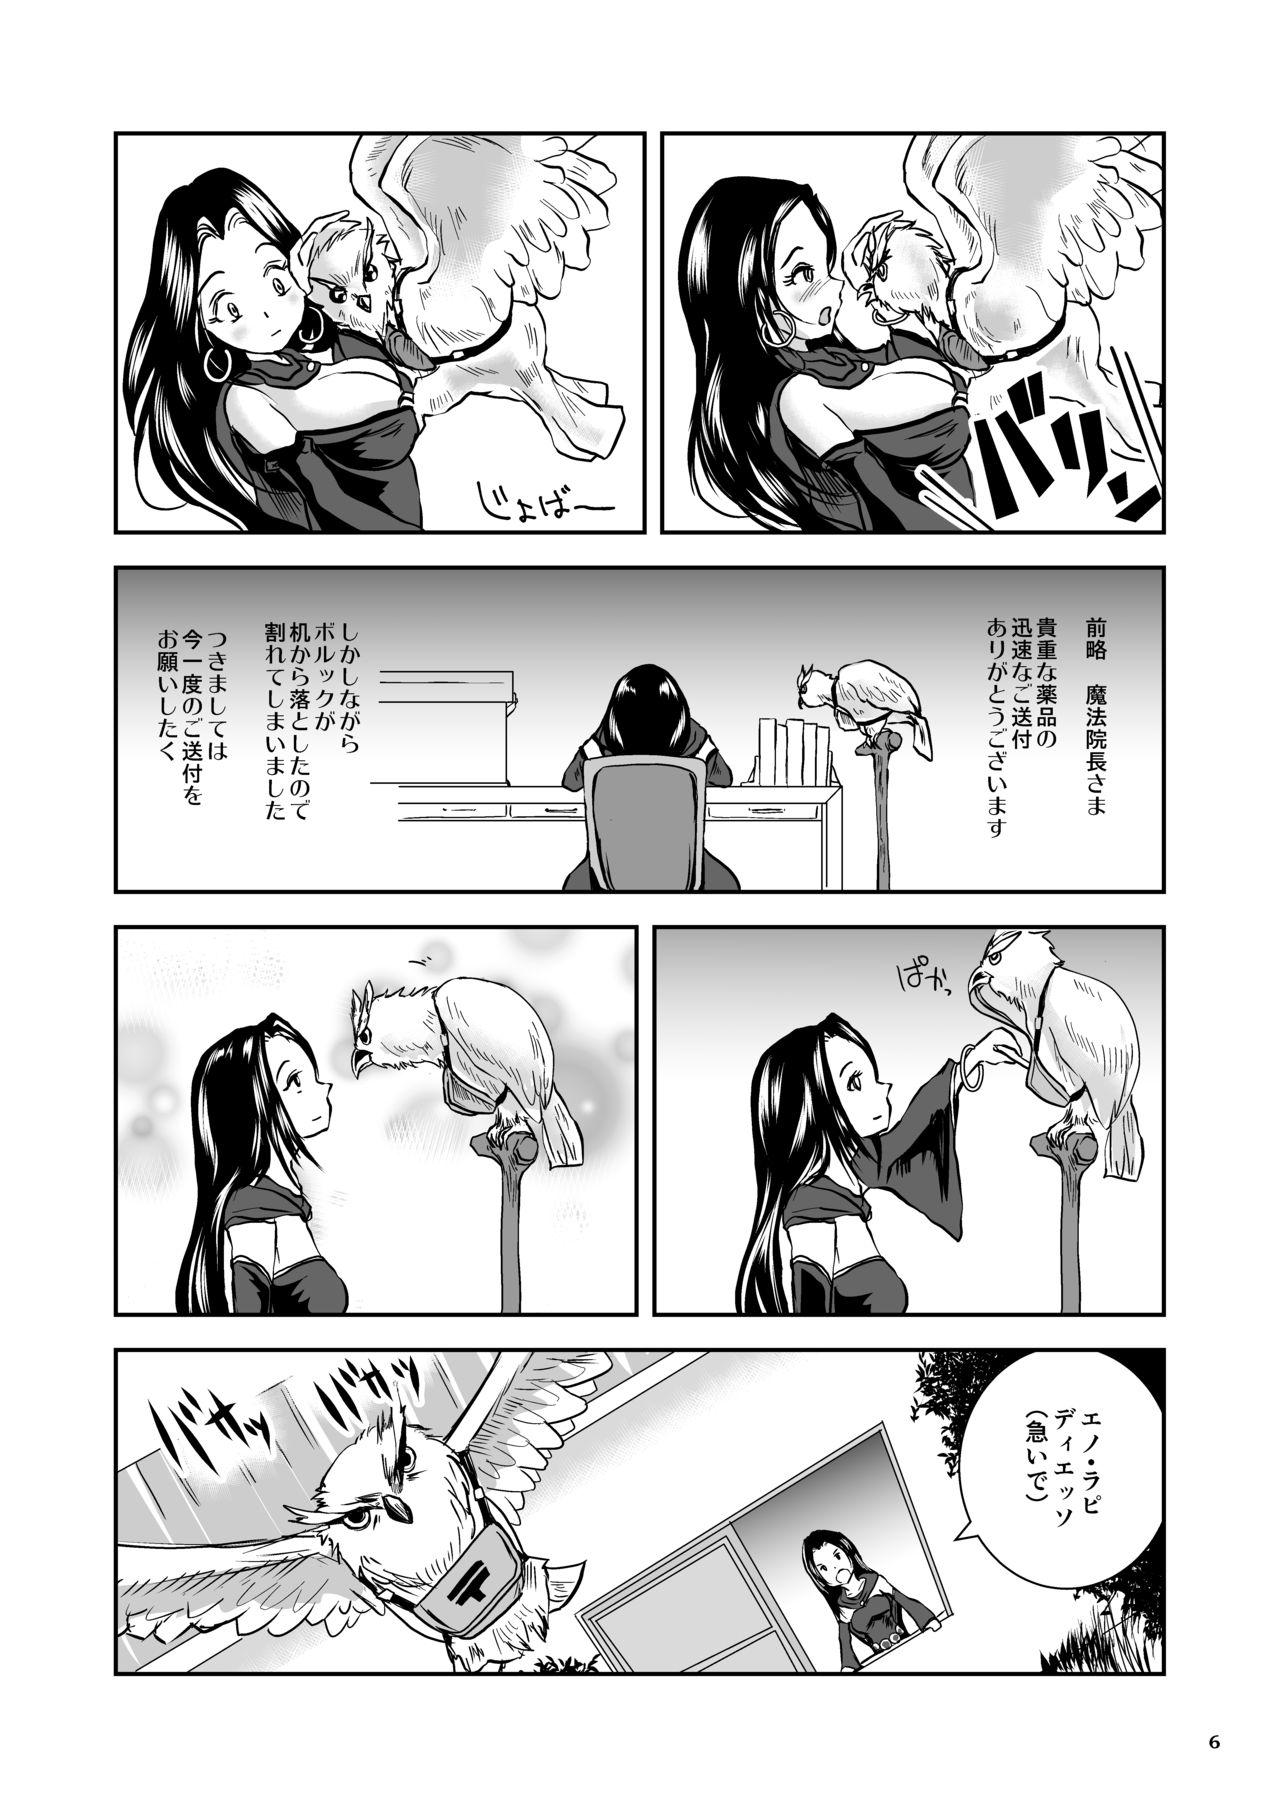 Foreplay Oonamekuji to Kurokami no Mahoutsukai - Parasitized Giant Slugs V.S. Sorceress of the Black Hair as Aura Lezdom - Page 6